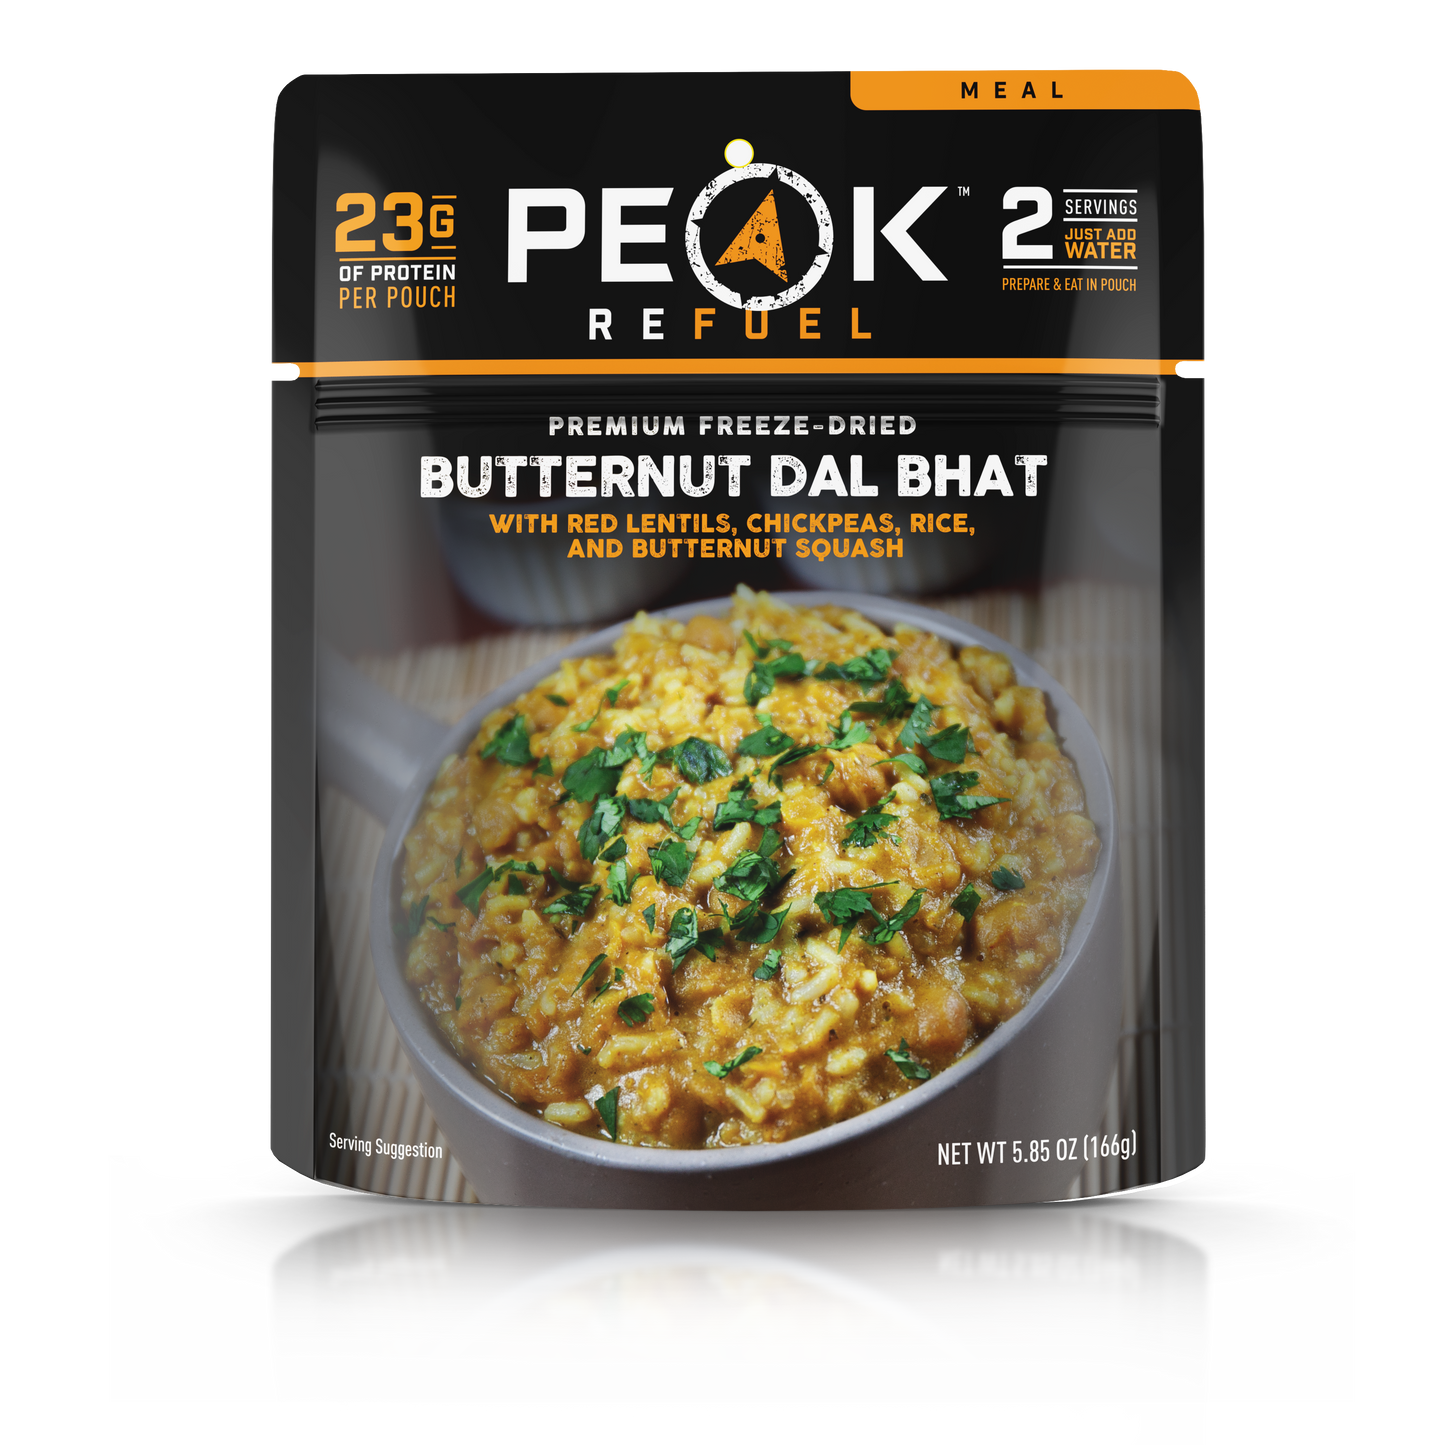 Butternut Dal Bhat by Peak Refuel